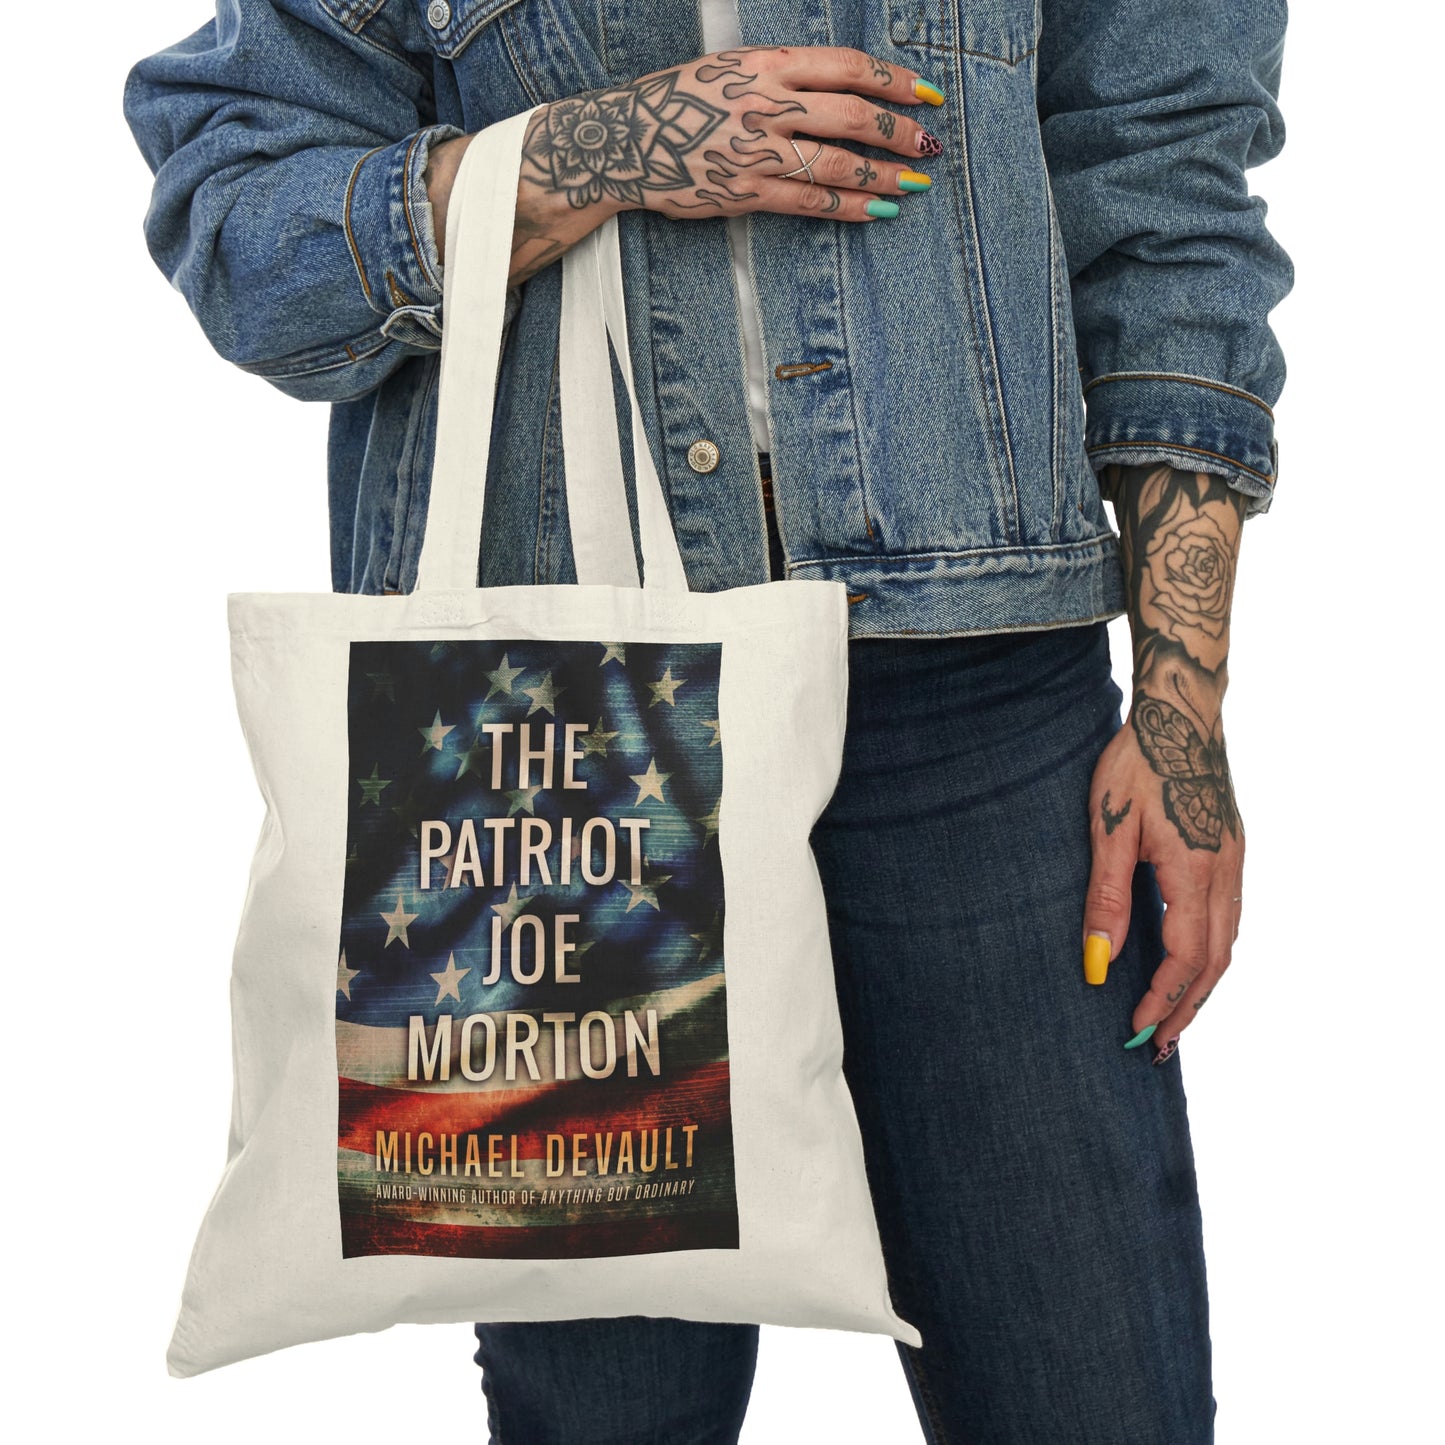 The Patriot Joe Morton - Natural Tote Bag